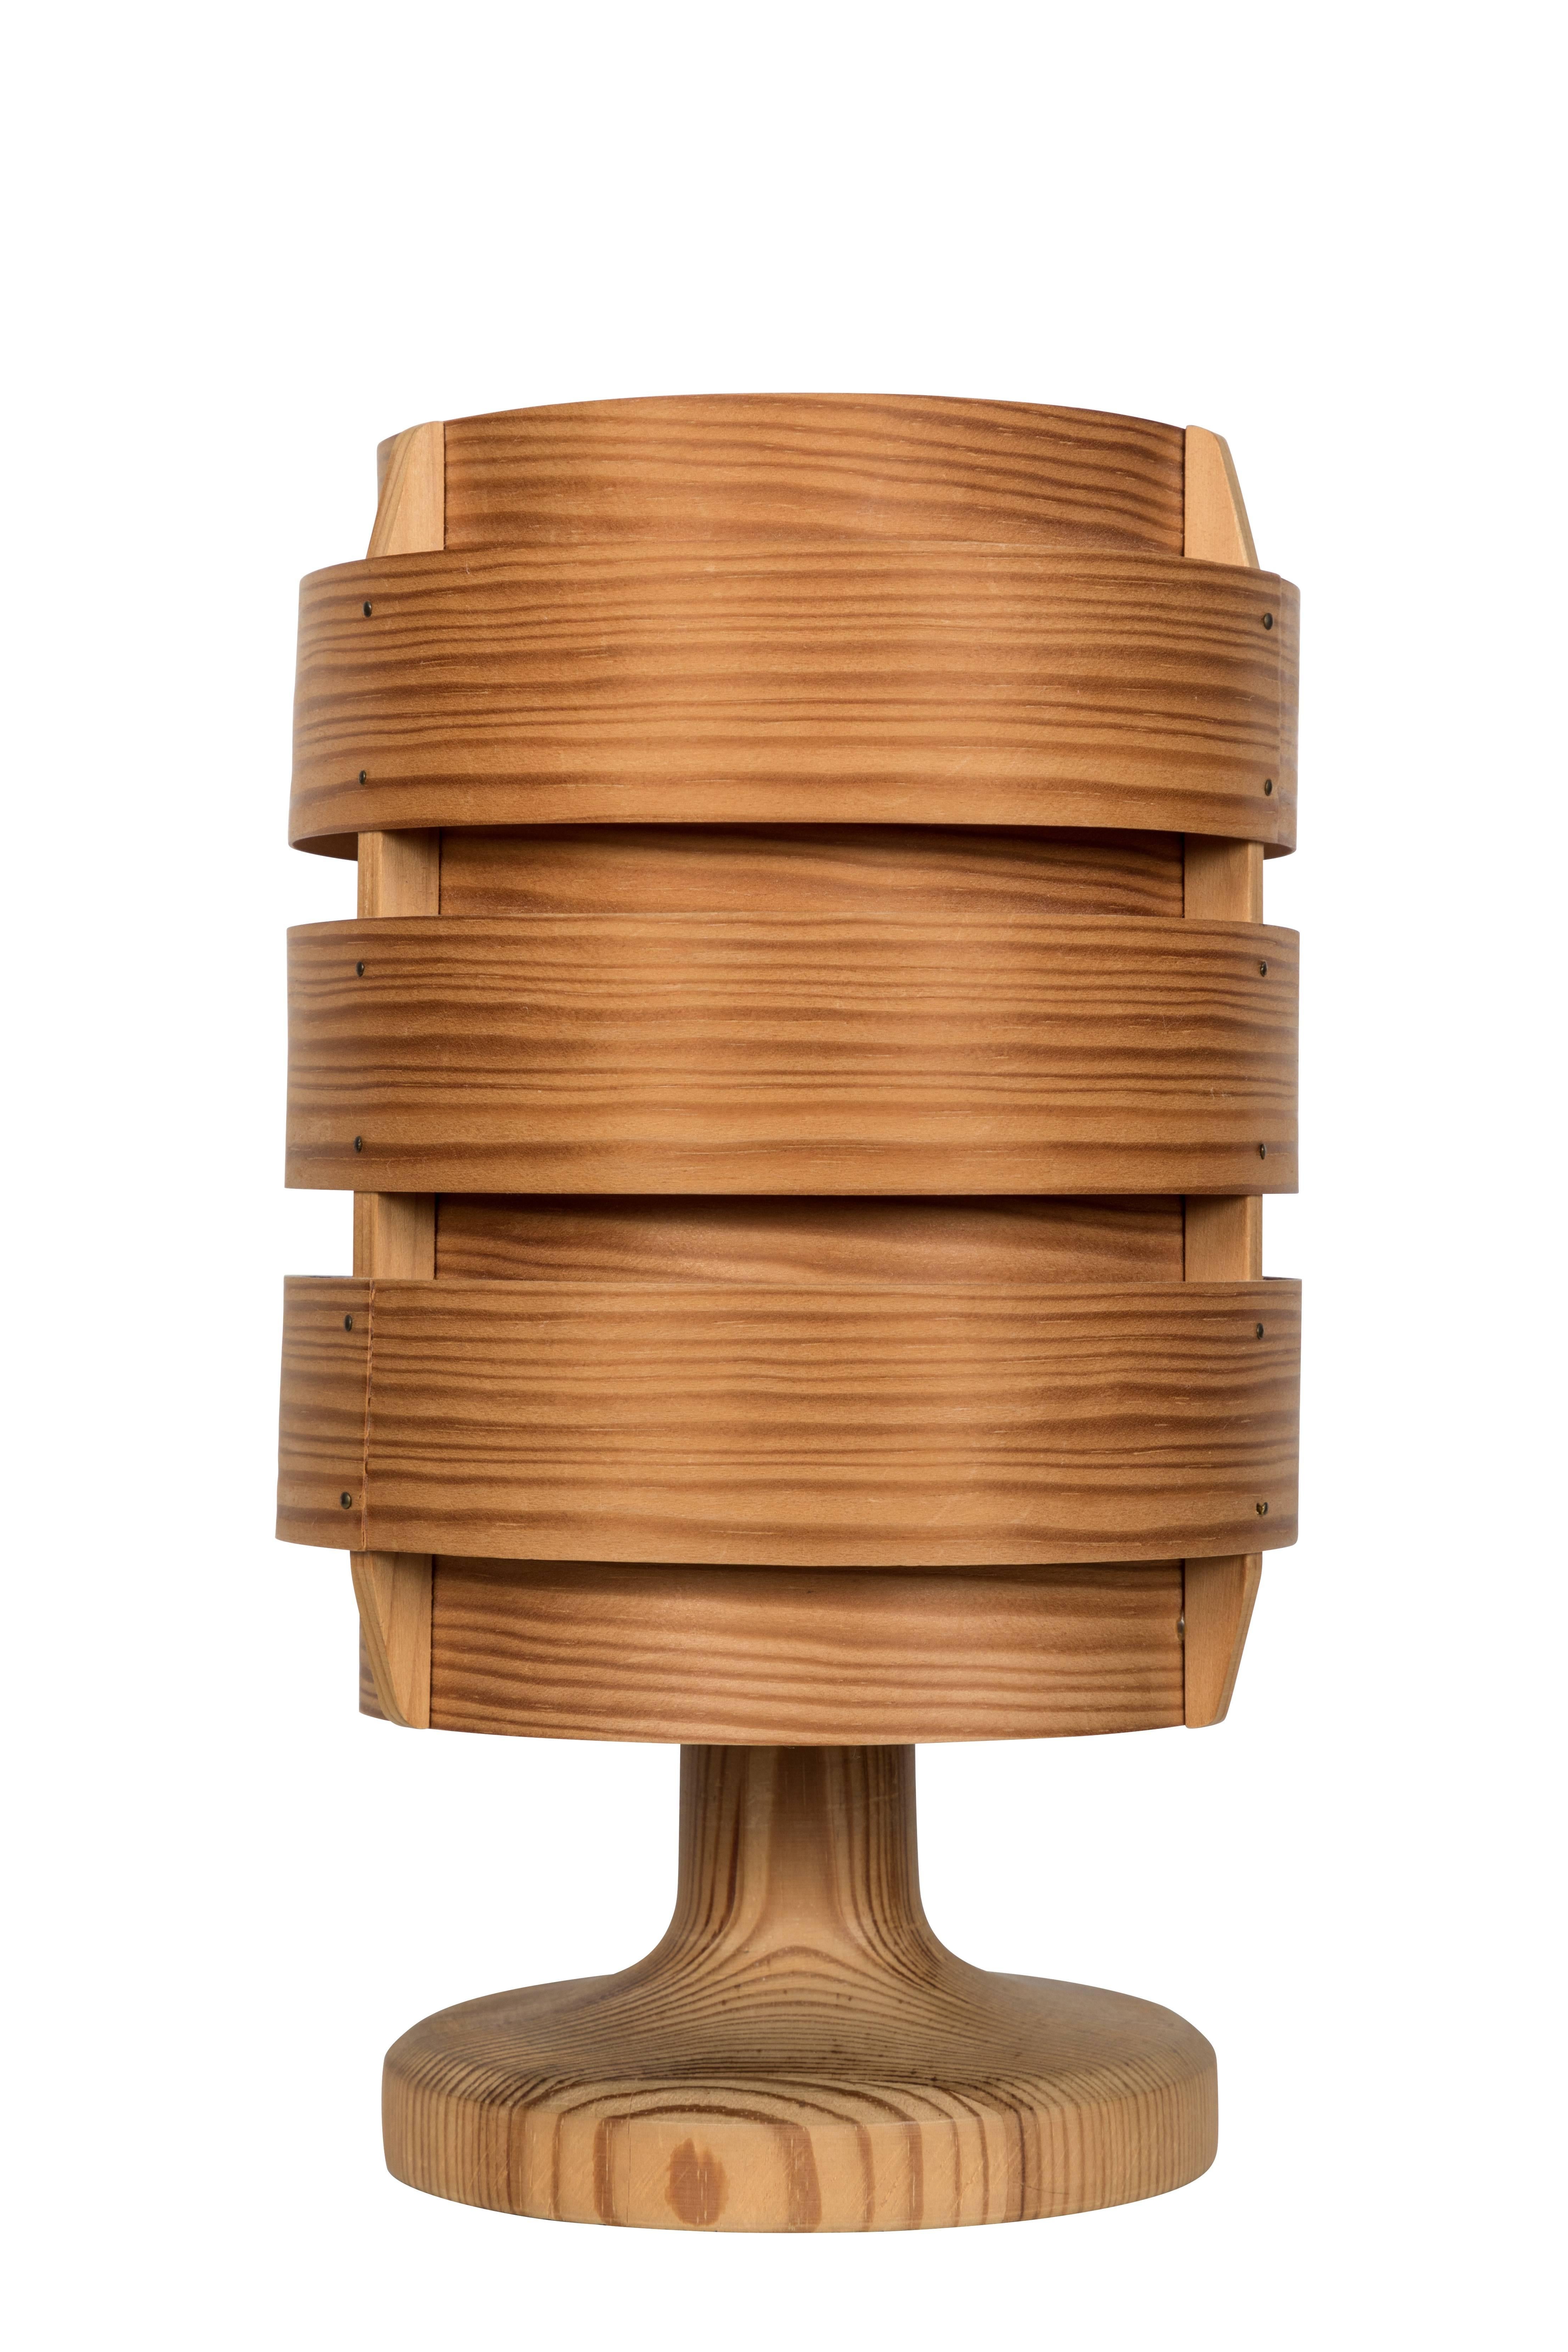 Lámpara de sobremesa de teca Hans-Agne Jakobsson de los años 60 para AB Ellysett. Diseñado y fabricado por Jakobsson en Markaryd (Suecia) y realizado en madera curvada fina con base de madera maciza. Una lámpara singularmente arquitectónica y rara,